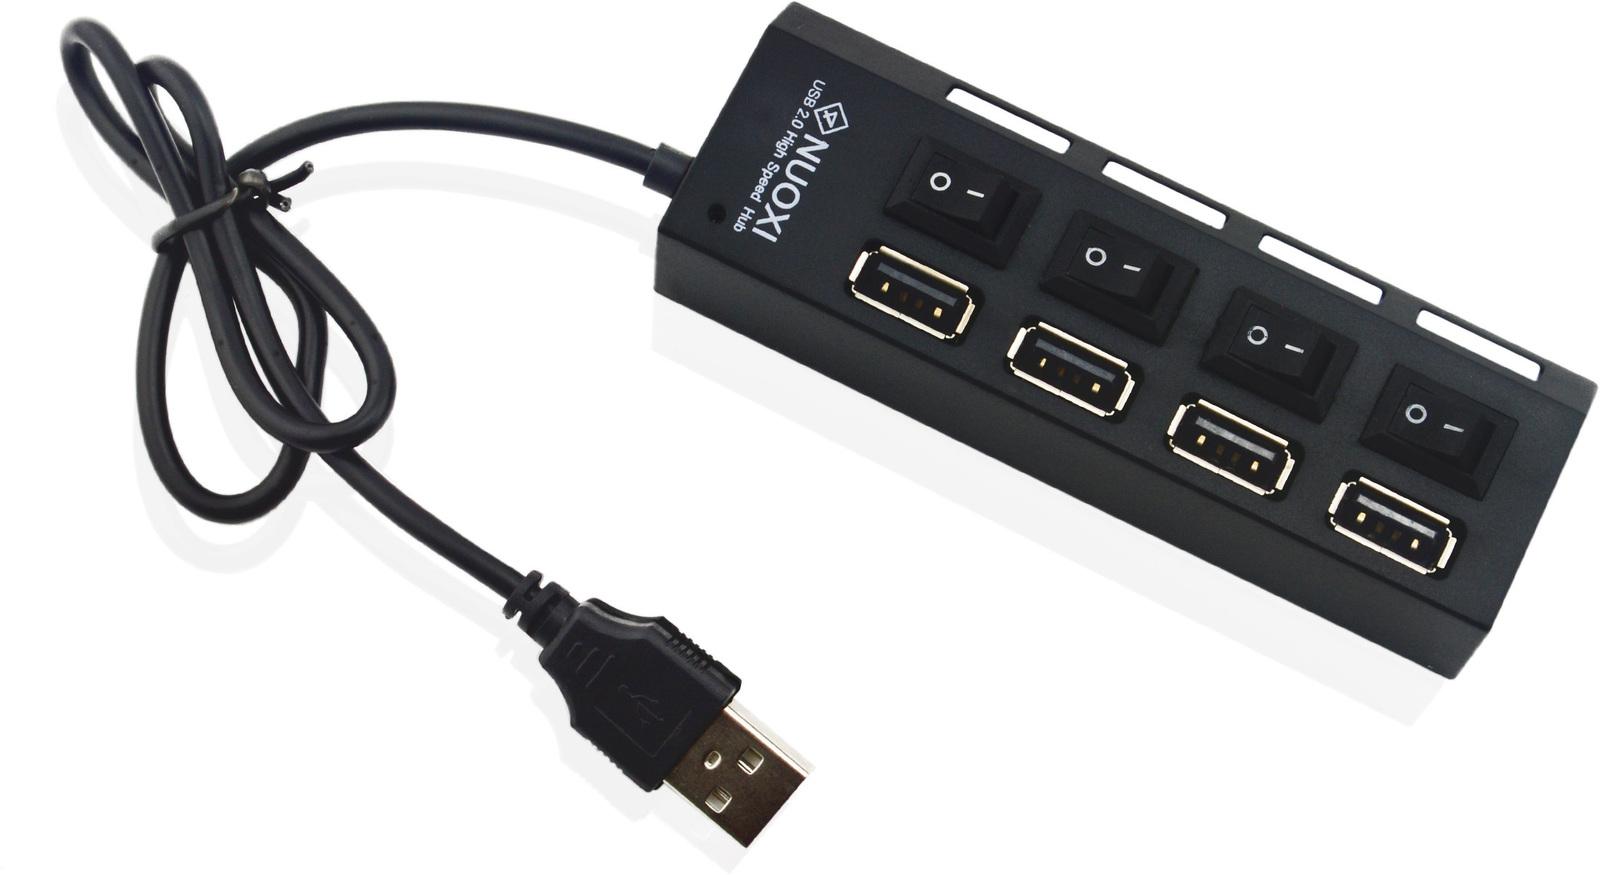 High usb 2.0. Разветвитель USB-Hub 2.0 (RTL-01a). 4 Ports USB 2.0 High Speed Hub. USB-разветвитель Esperanza USB 2.0 Hub 4-Port (ea127). USB-разветвитель (хаб) h401a.